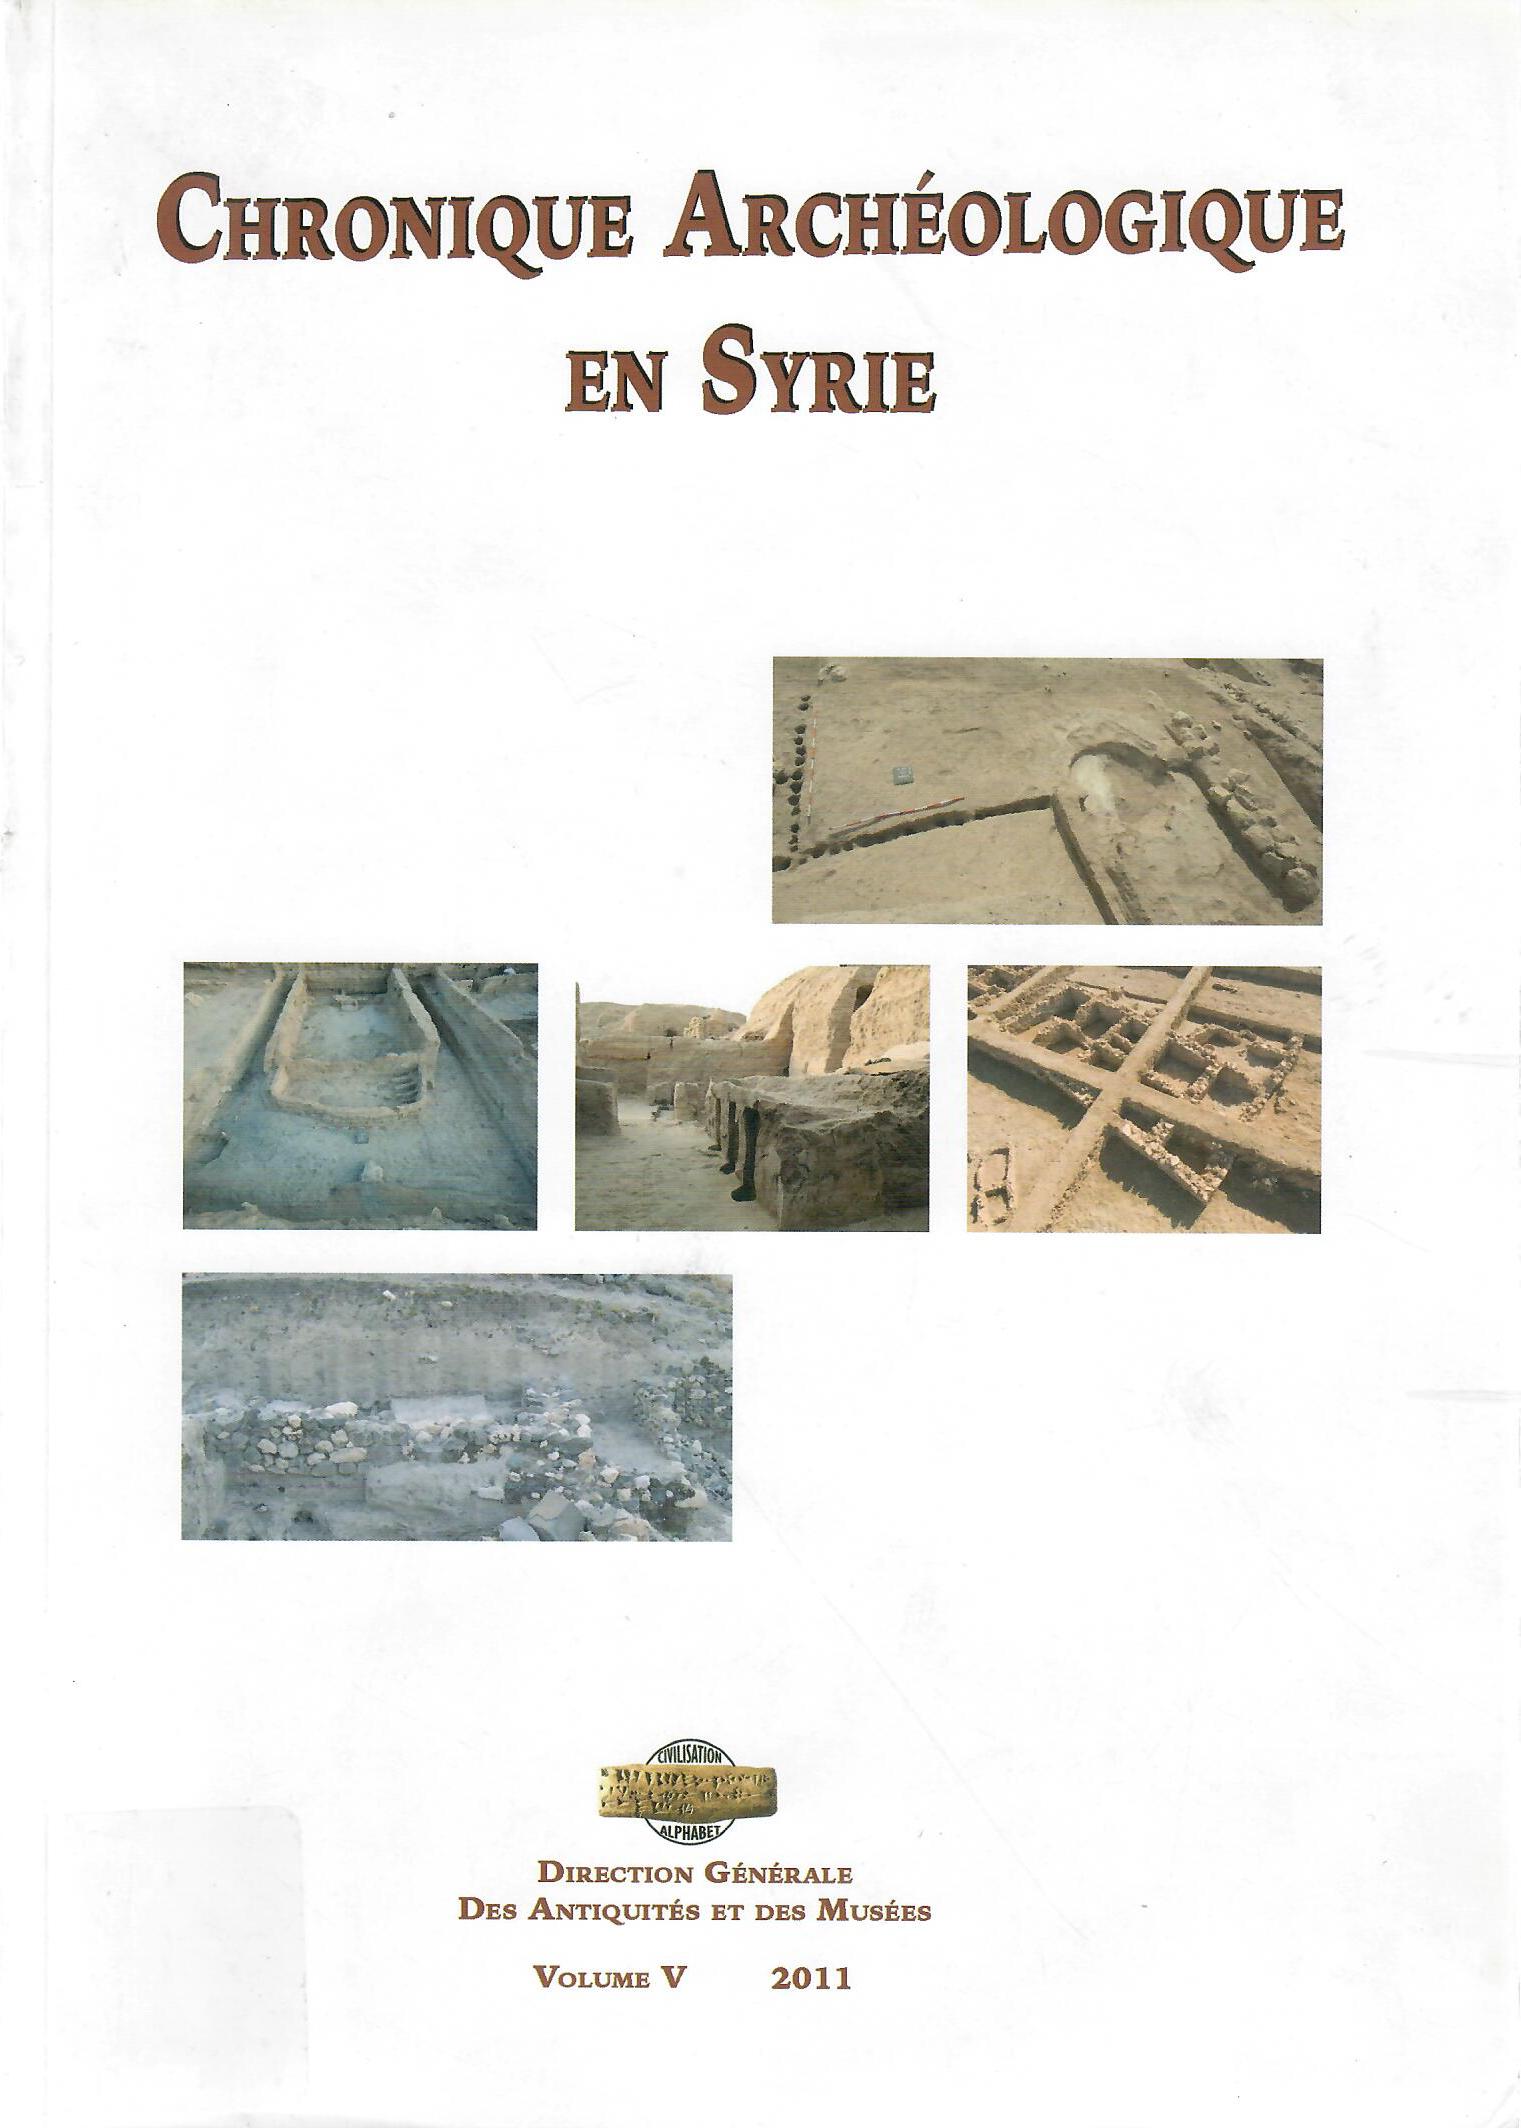 CHRONIQUE ARCHEOLOGIQUE EN SYRIE VOLUME 5